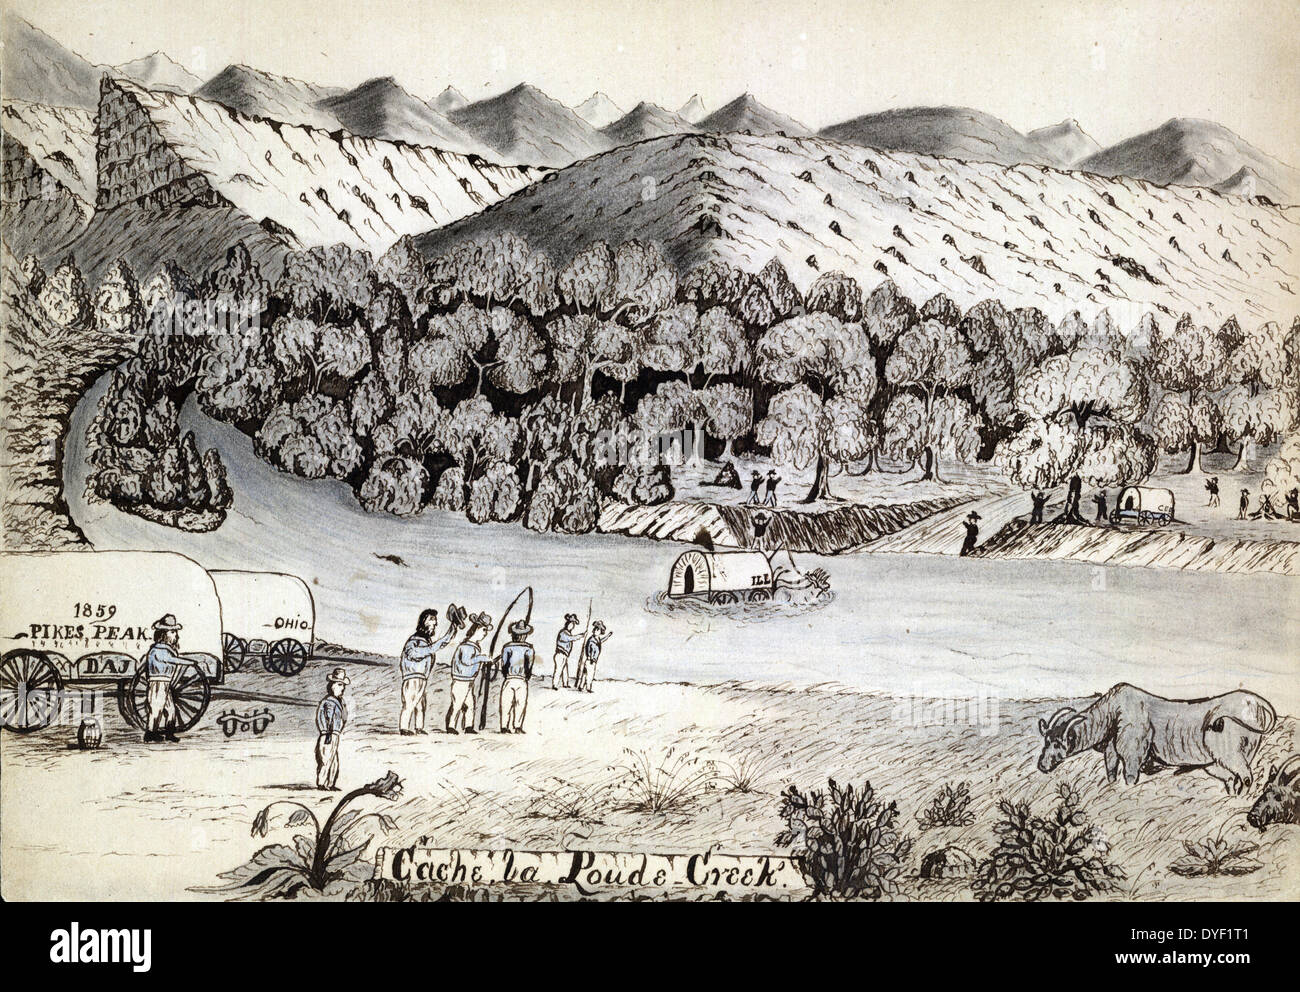 La Poudre de Cache Creek par Daniel Jenks, 1827-1869, l'artiste : 1859. Dessin montre un chariot couvert, étiqueté "mauvais", conduit par deux ox traversant une rivière dans les montagnes. De l'autre côté de la rivière sont deux hommes par un incendie, d'un wagon couvert, et les hommes debout et montrant le chariot au milieu de la rivière. Sur la zone littorale, les hommes debout à côté dételé les wagons, l'un portant la mention "Ohio", l'autre, '1859 4610.' Un boeuf broute en bas à droite. Ce flux est situé près de l'actuelle ville de Ft. Collins, Colorado. Jenks sont arrivés au camp 52 le lundi 30 mai 1859. Banque D'Images